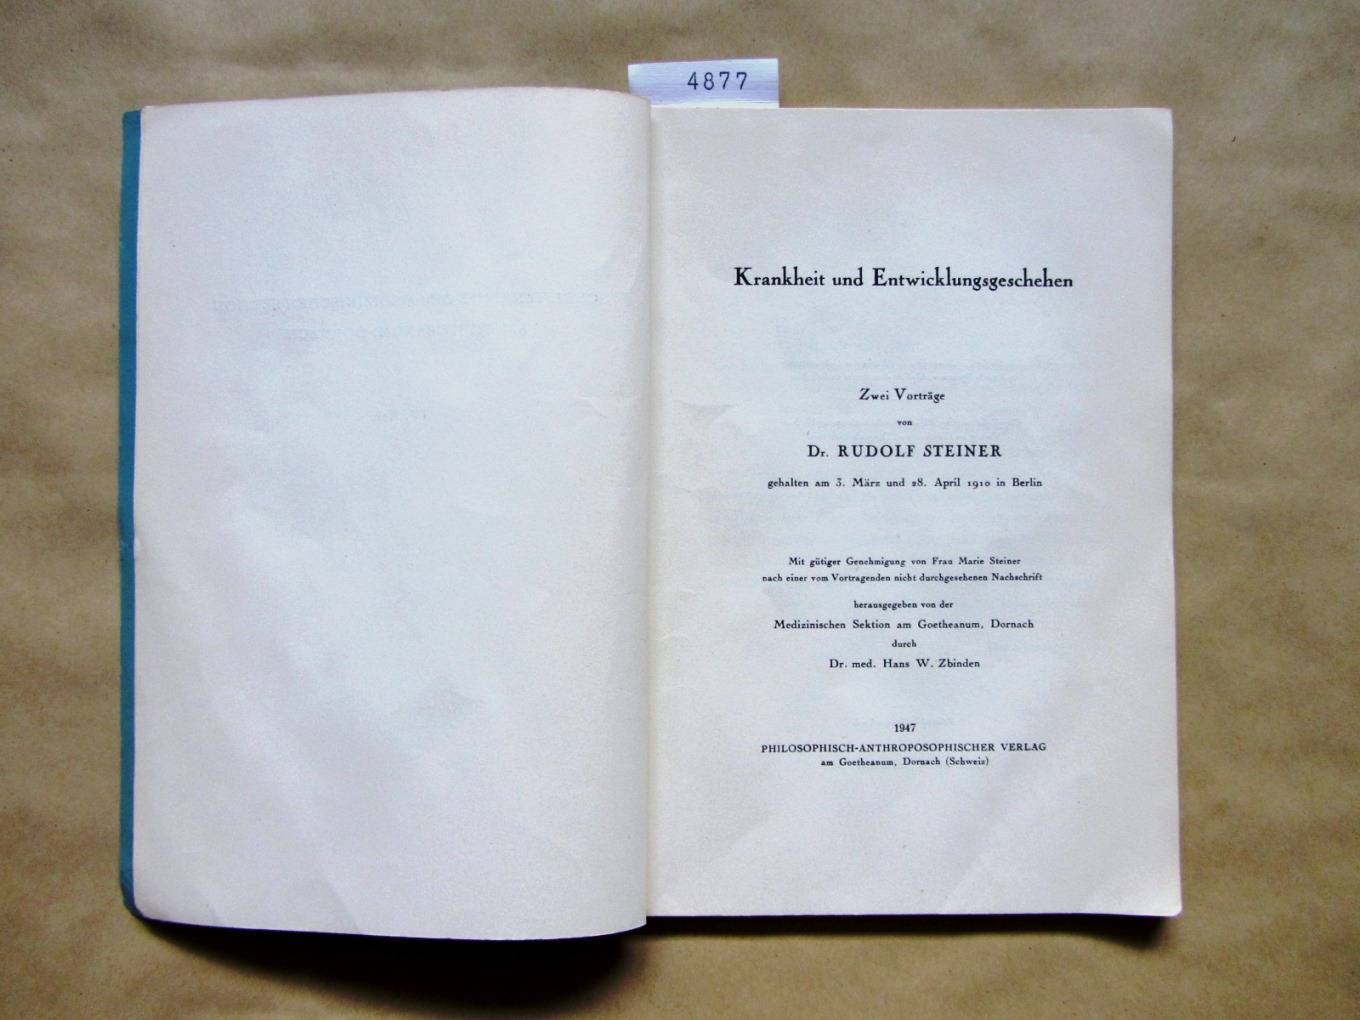 Steiner, Rudolf:  Krankheit und Entwicklungsgeschehen. Zwei Vorträge gehalten ... 1910. ("Schriftenreihe der medizinischen Sektion am Goetheanum, Dornach", IV. Heft) 